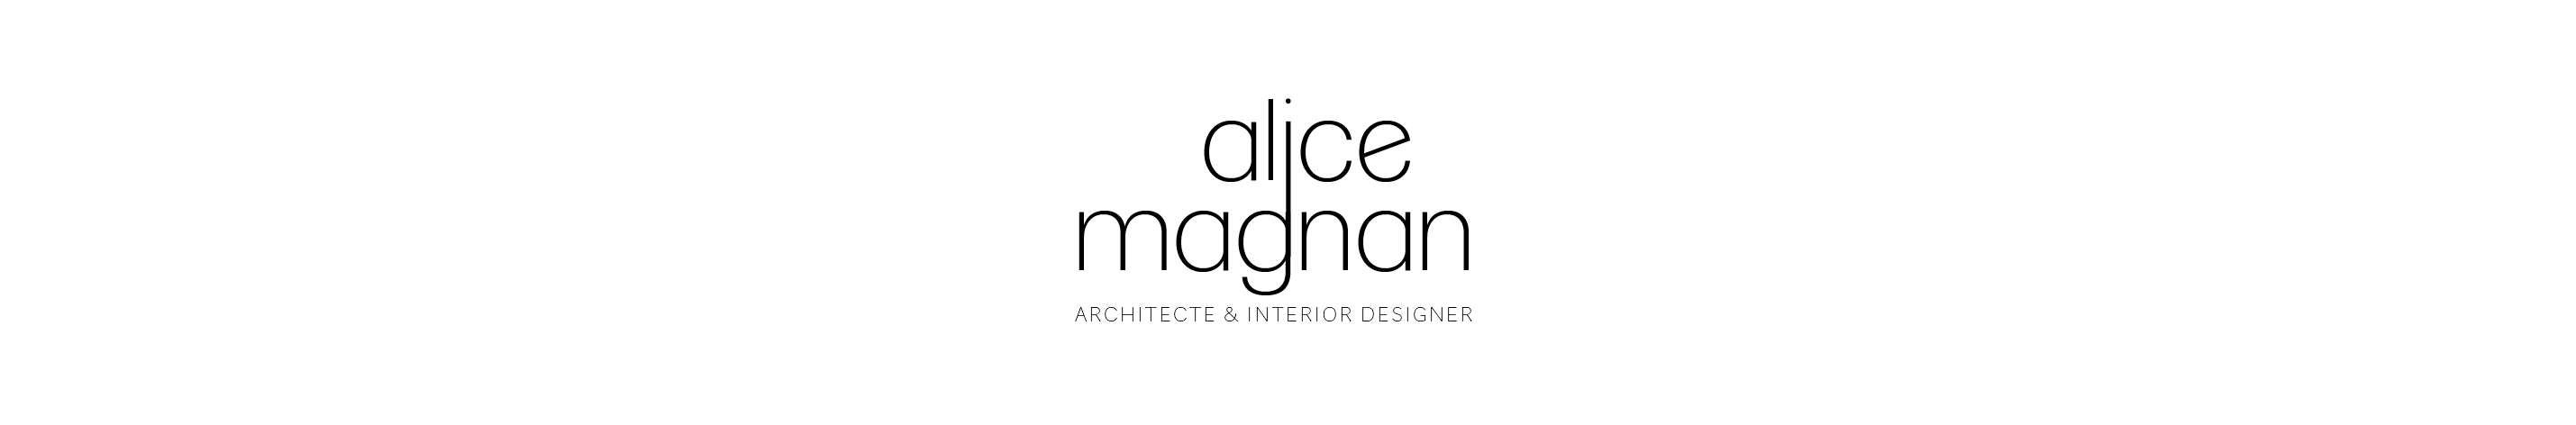 Alice Magnan architecte & interior designer